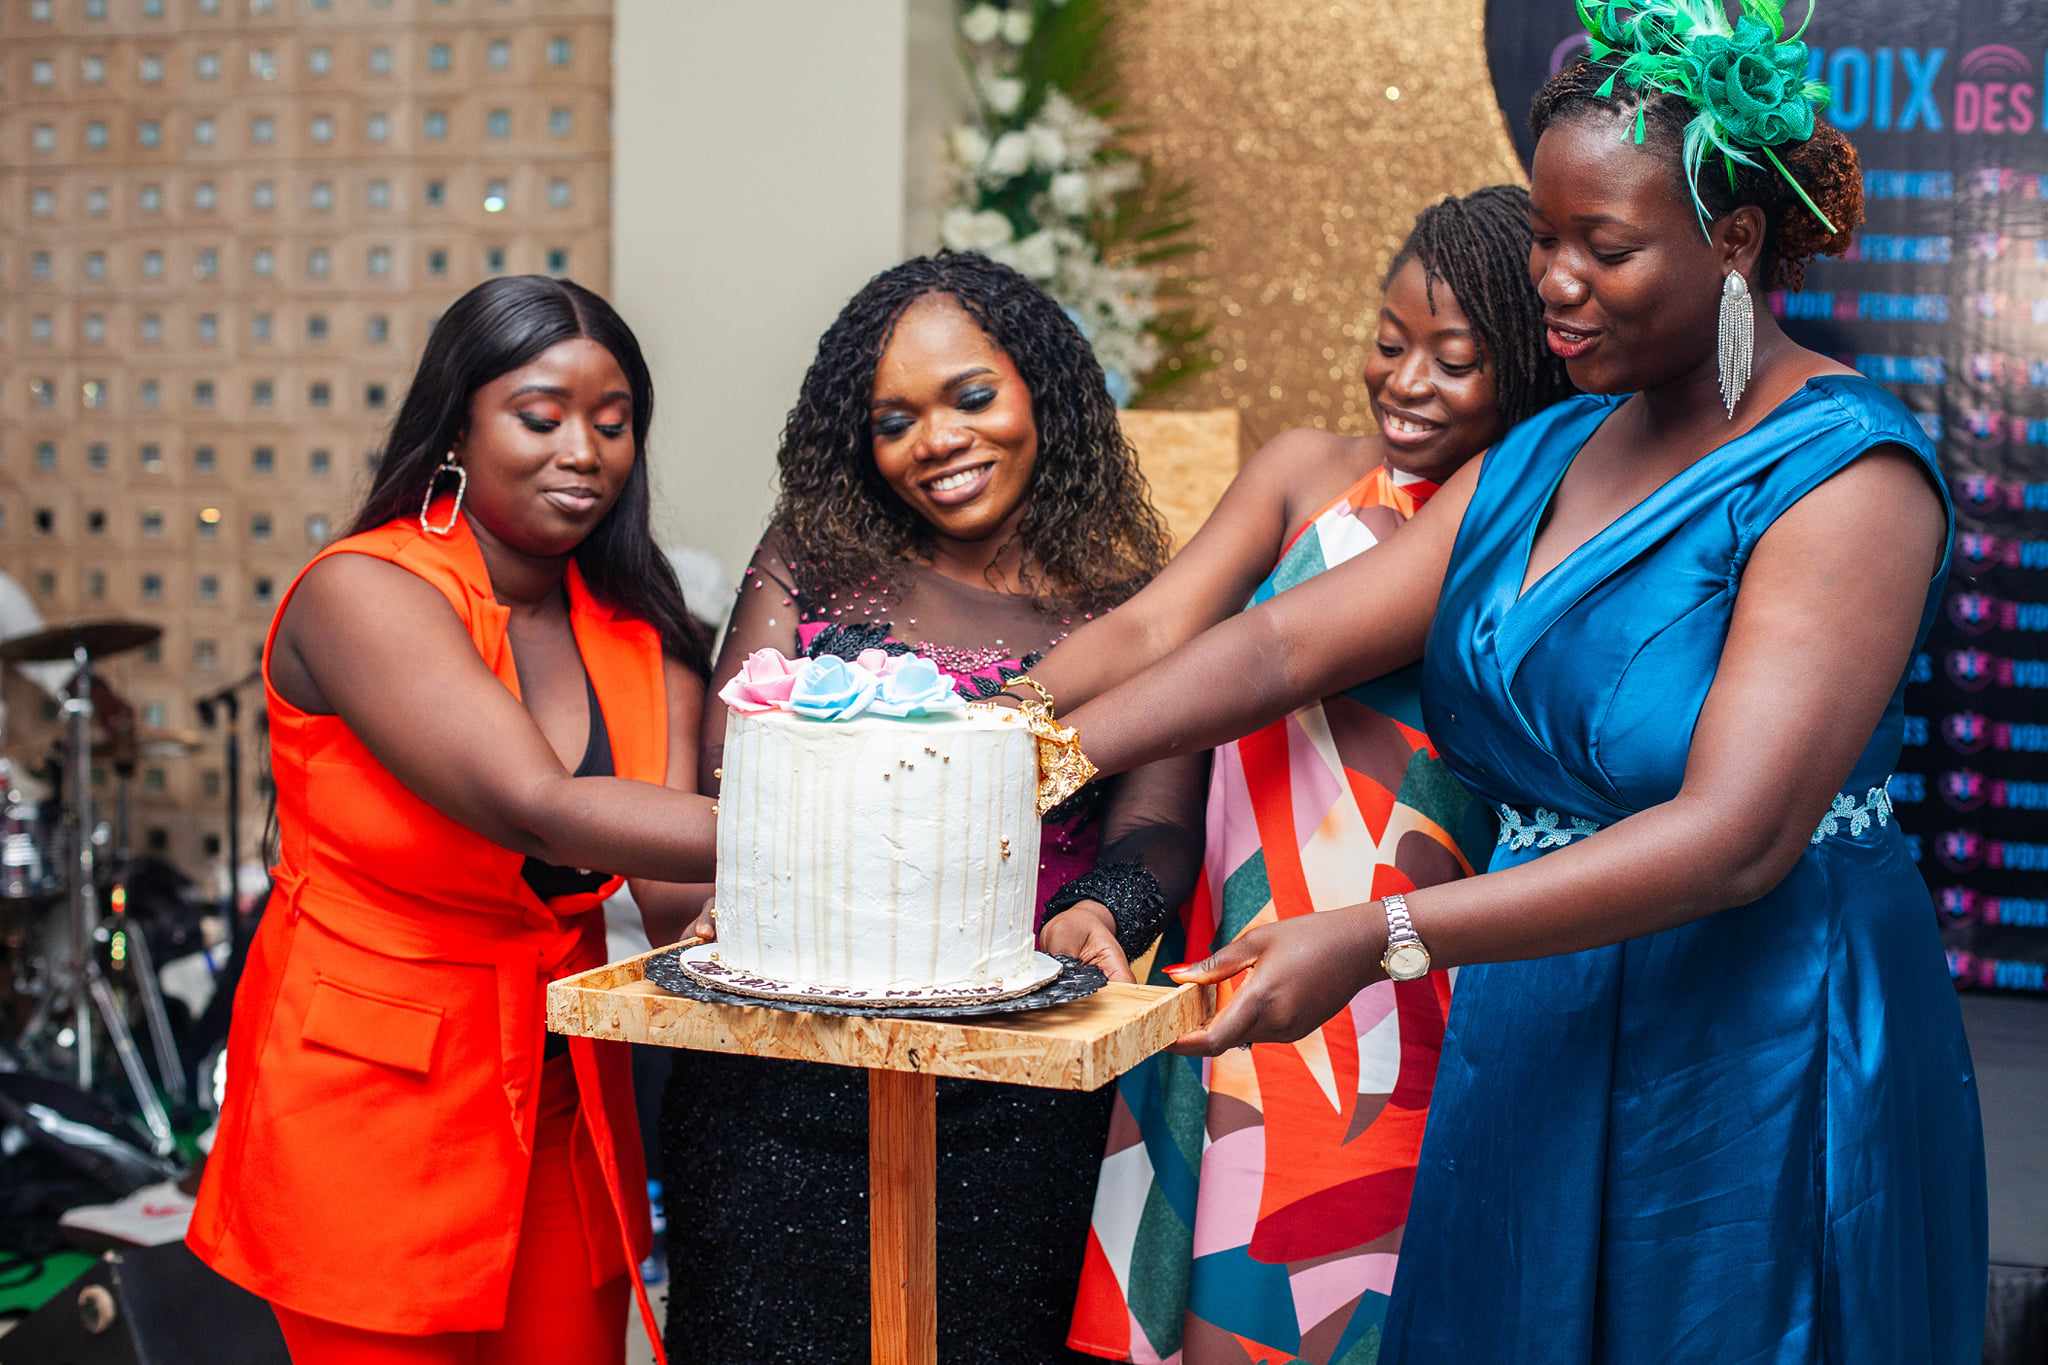 Les responsables de l'ONG Voix des Femmes coupent le gâteau des 5 ans d'existence de l'association